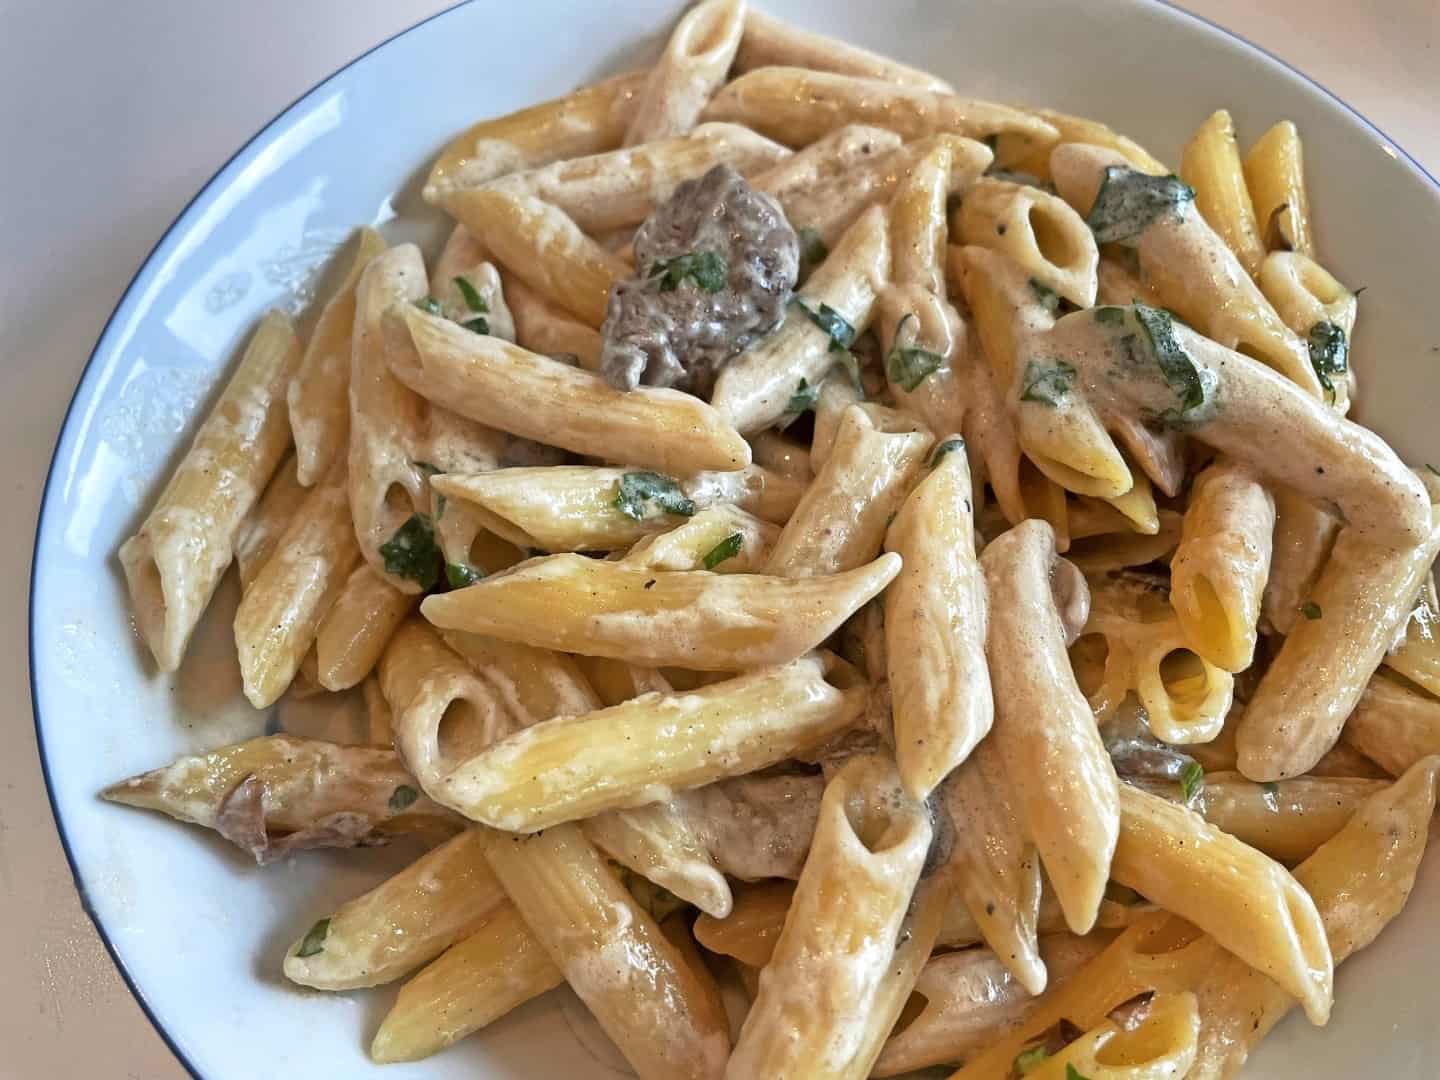 Avisen takeaway: Her er et godt bud på en italiensk middag i hjemmet | amtsavisen.dk